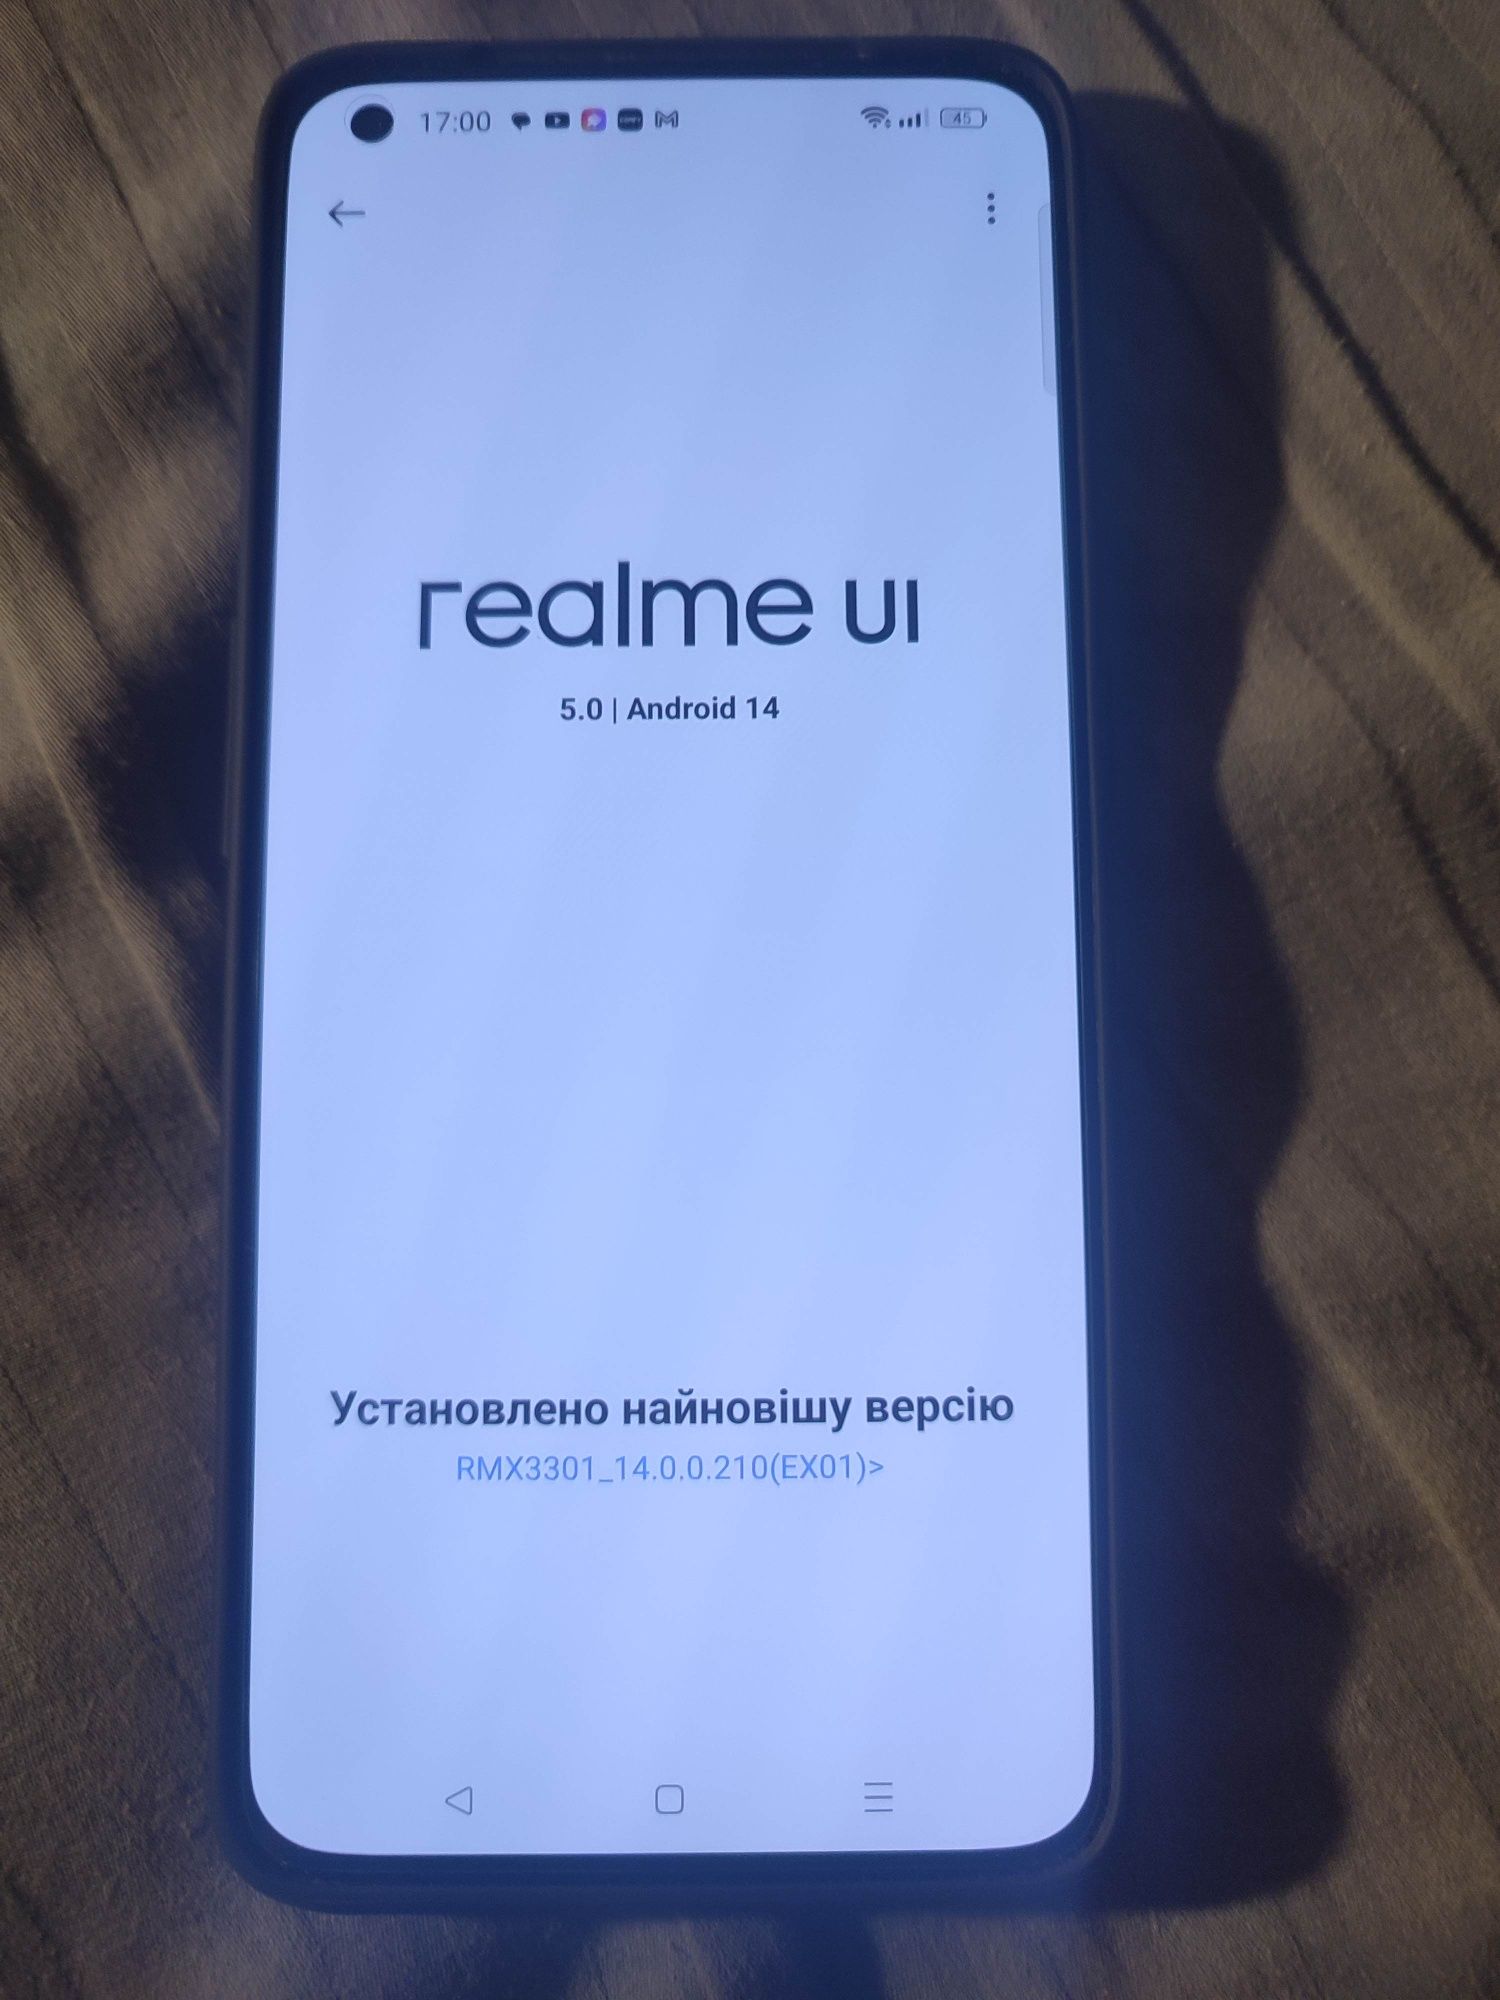 Realme GT2 Pro , 8/128 gb, paper white